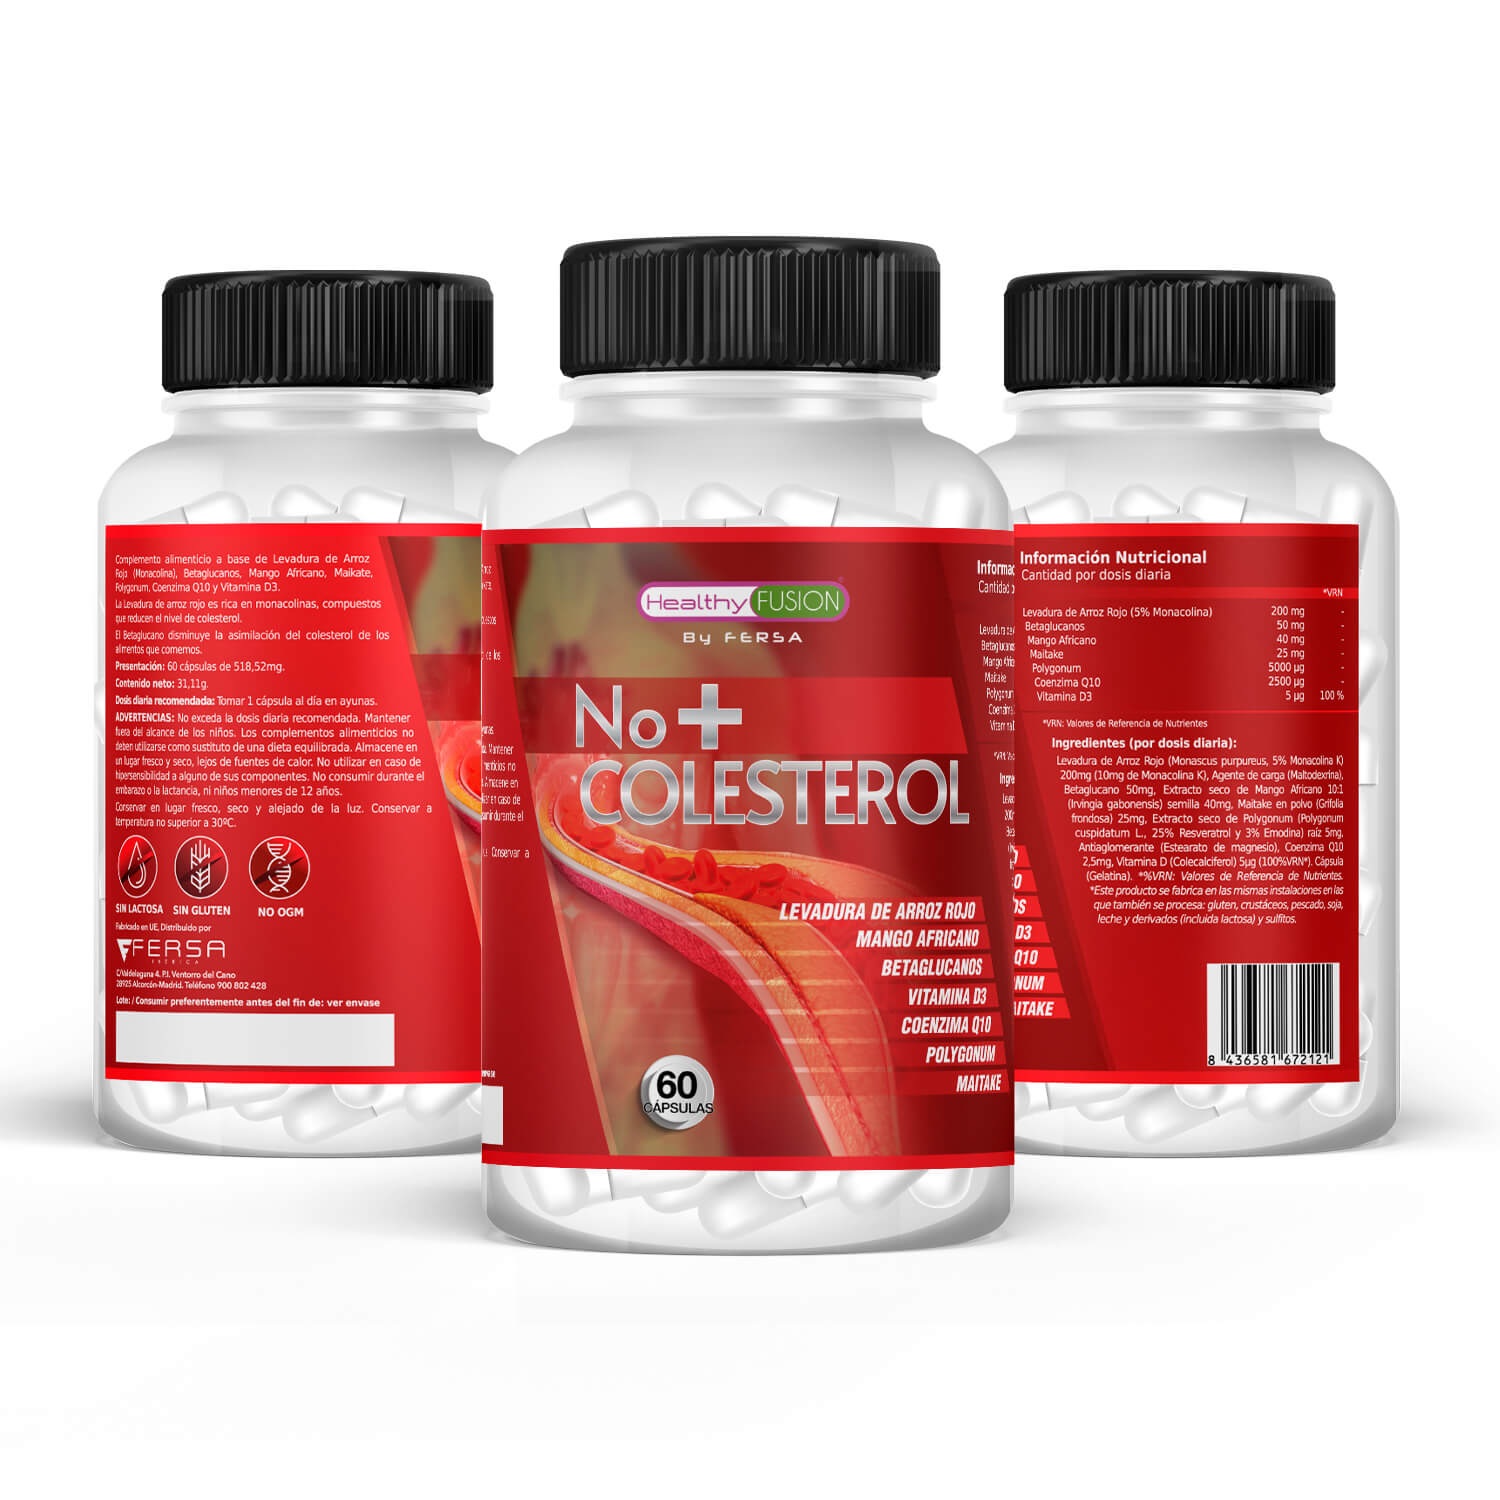 Healthy Fusion - No + Colesterol contenido